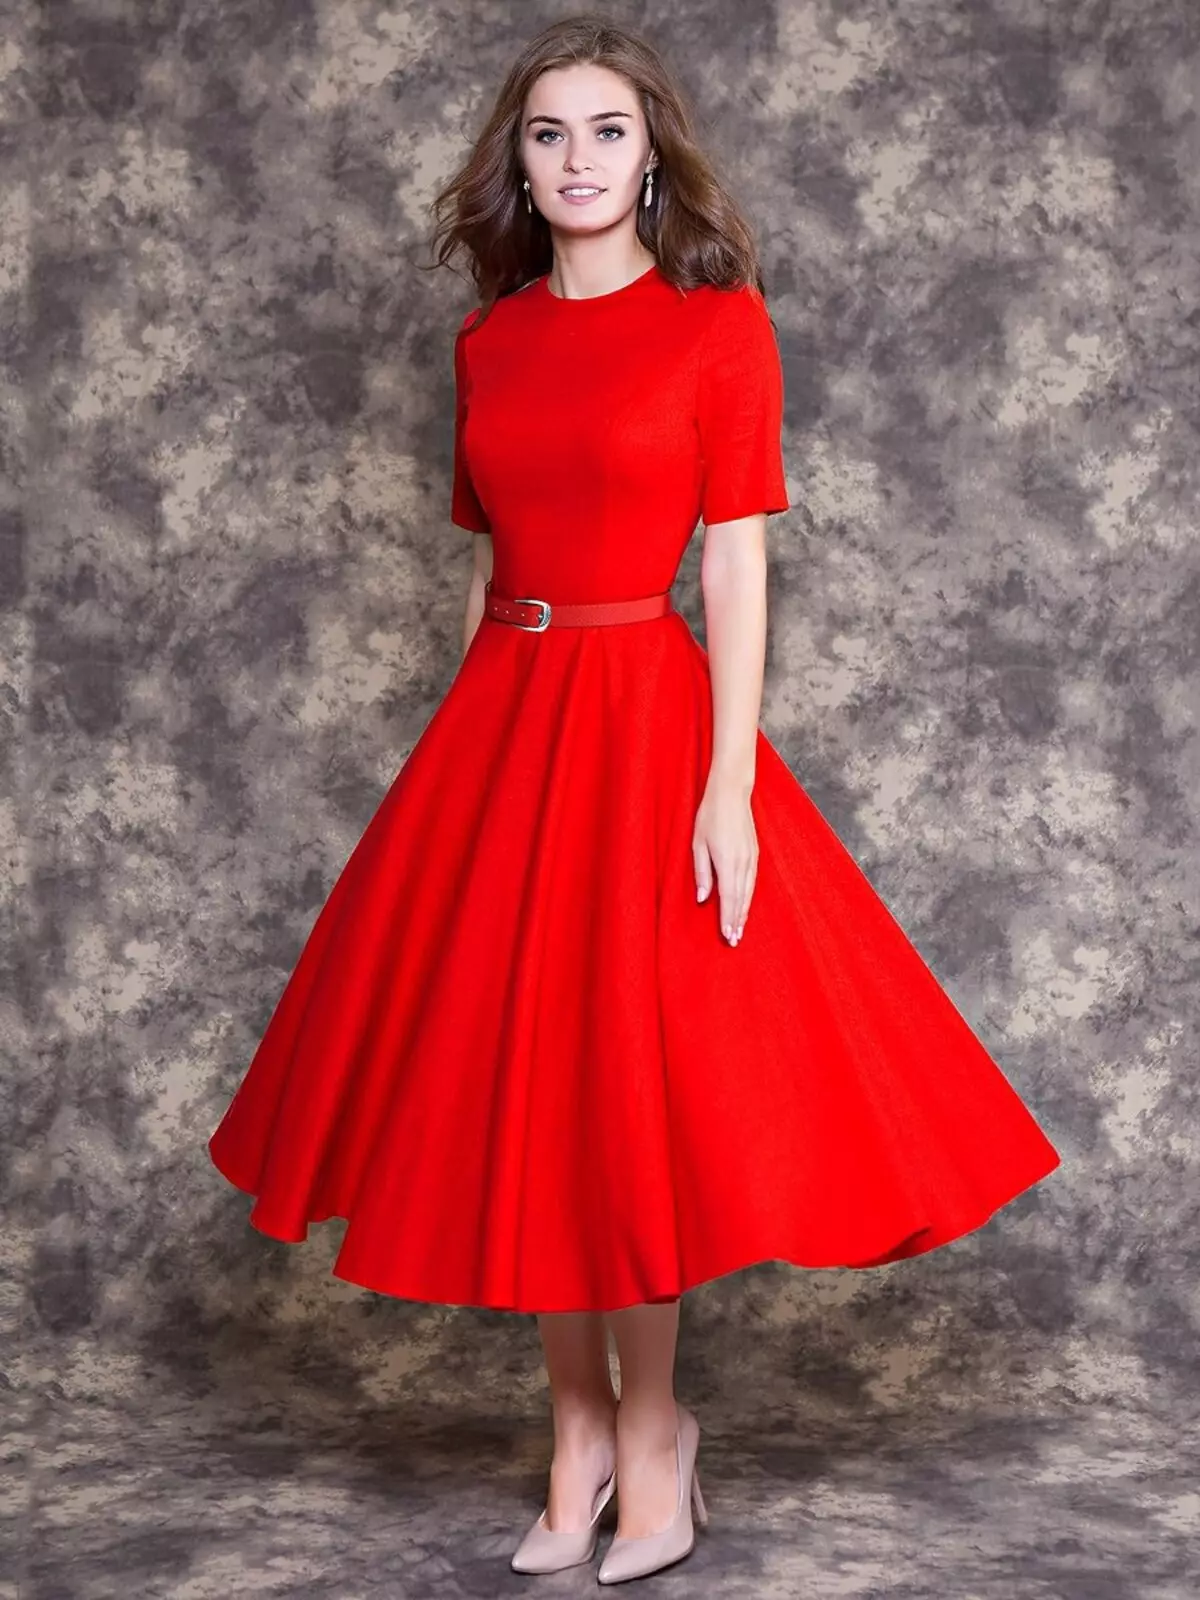 Платье с приталенной юбкой. Красное платье. Платье с юбкой-солнце. Платье солнце клеш. Красное пышное платье.